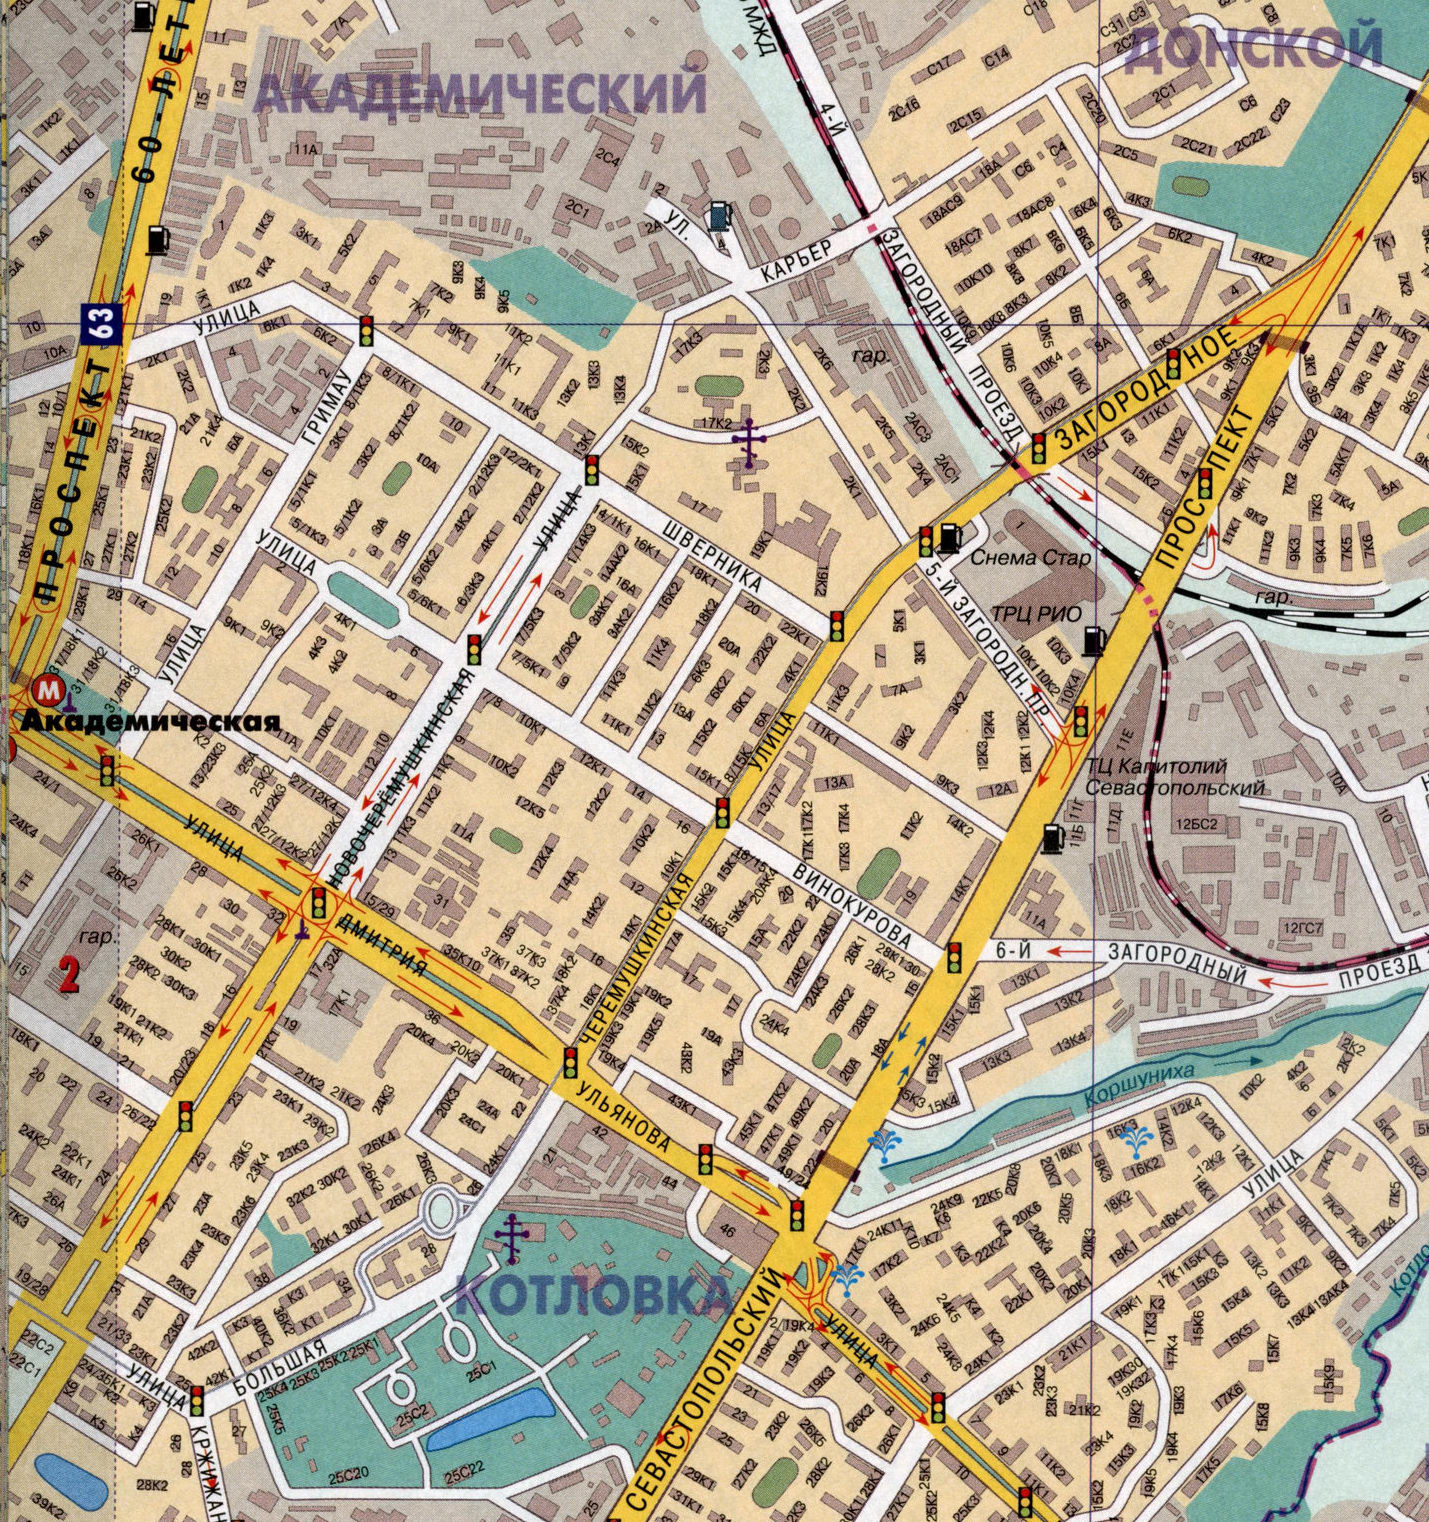 Тимирязевский район Москвы на карте и государственные муниципальные бюджетные учреждения, расположенные в районе Метрогородка